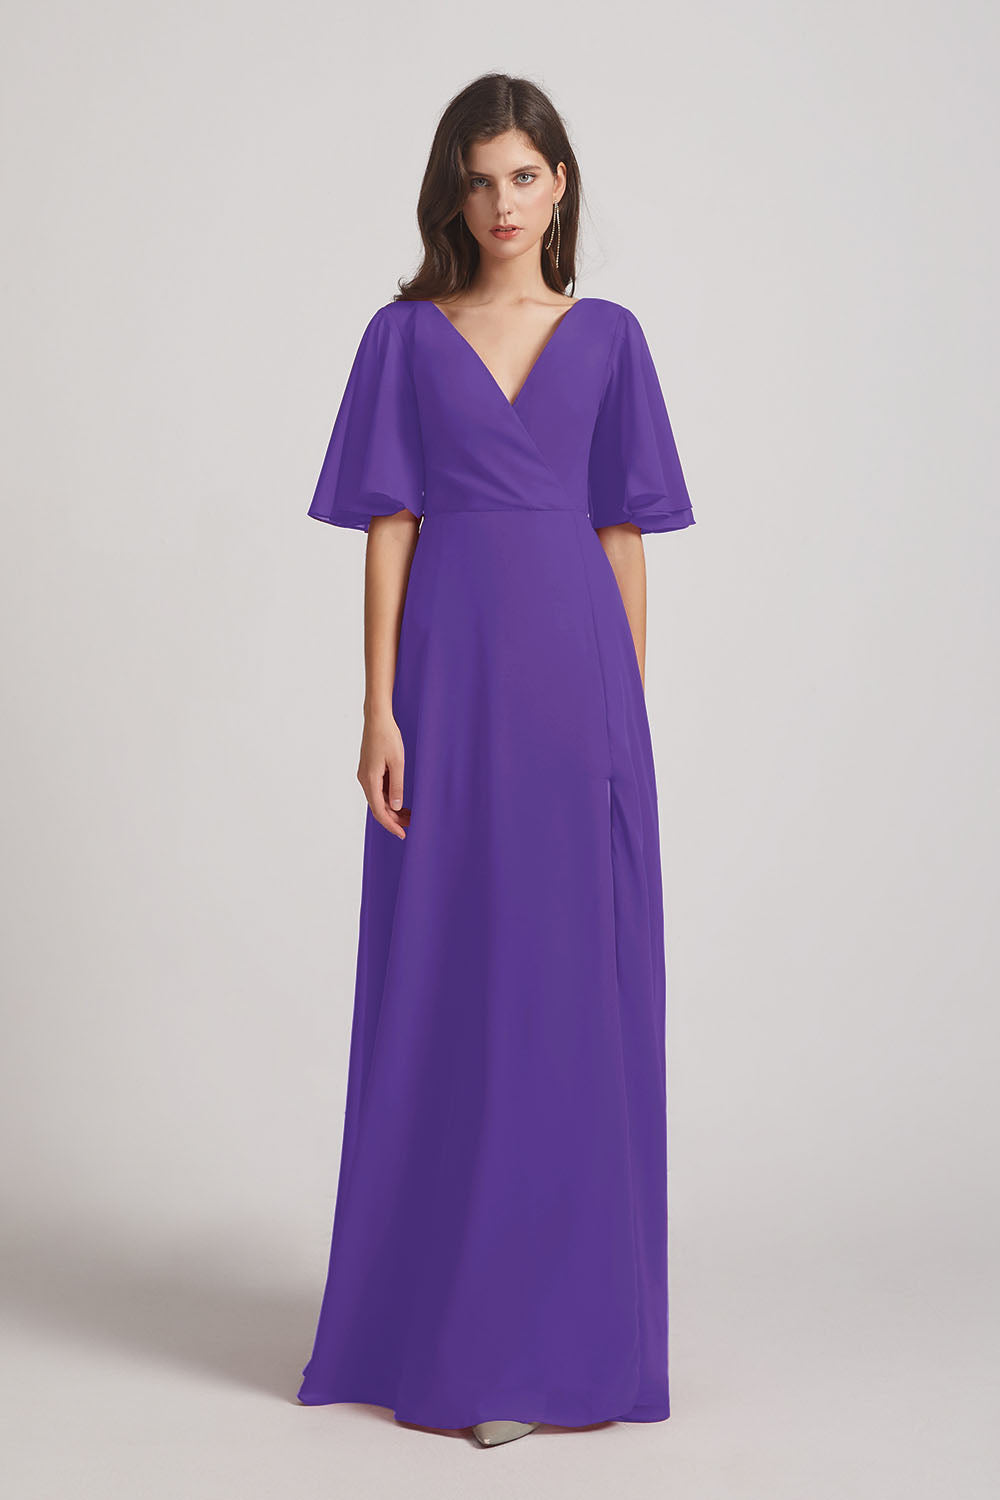 Alfa Bridal Purple V-Neck Chiffon Side Slit Bridesmaid Dresses With Flutter Half Sleeves (AF0056)